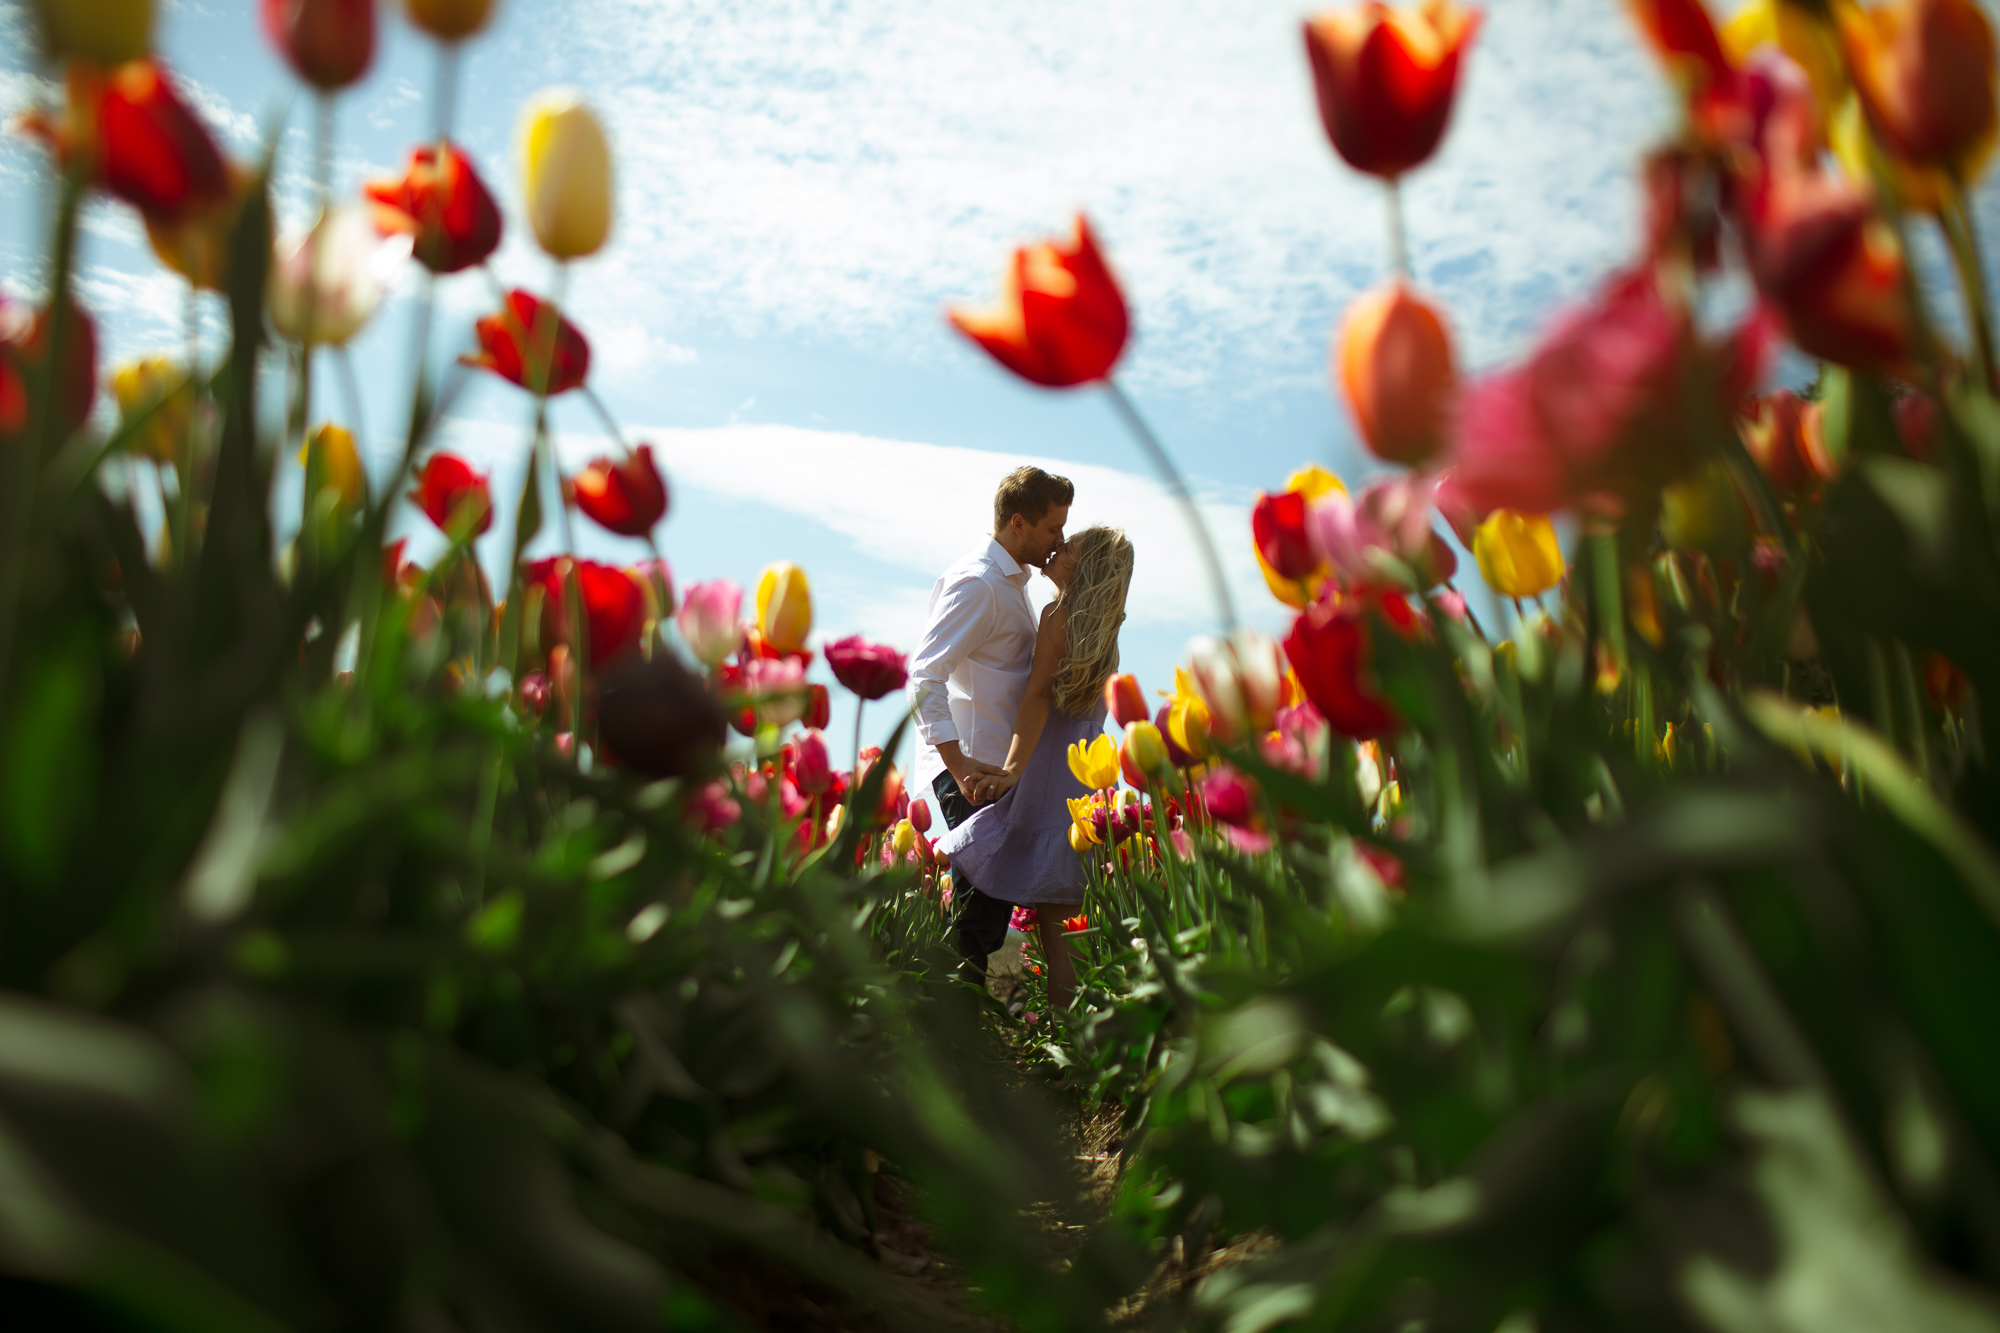 Thomas & Maria | Bloom Tulip Festival engagement